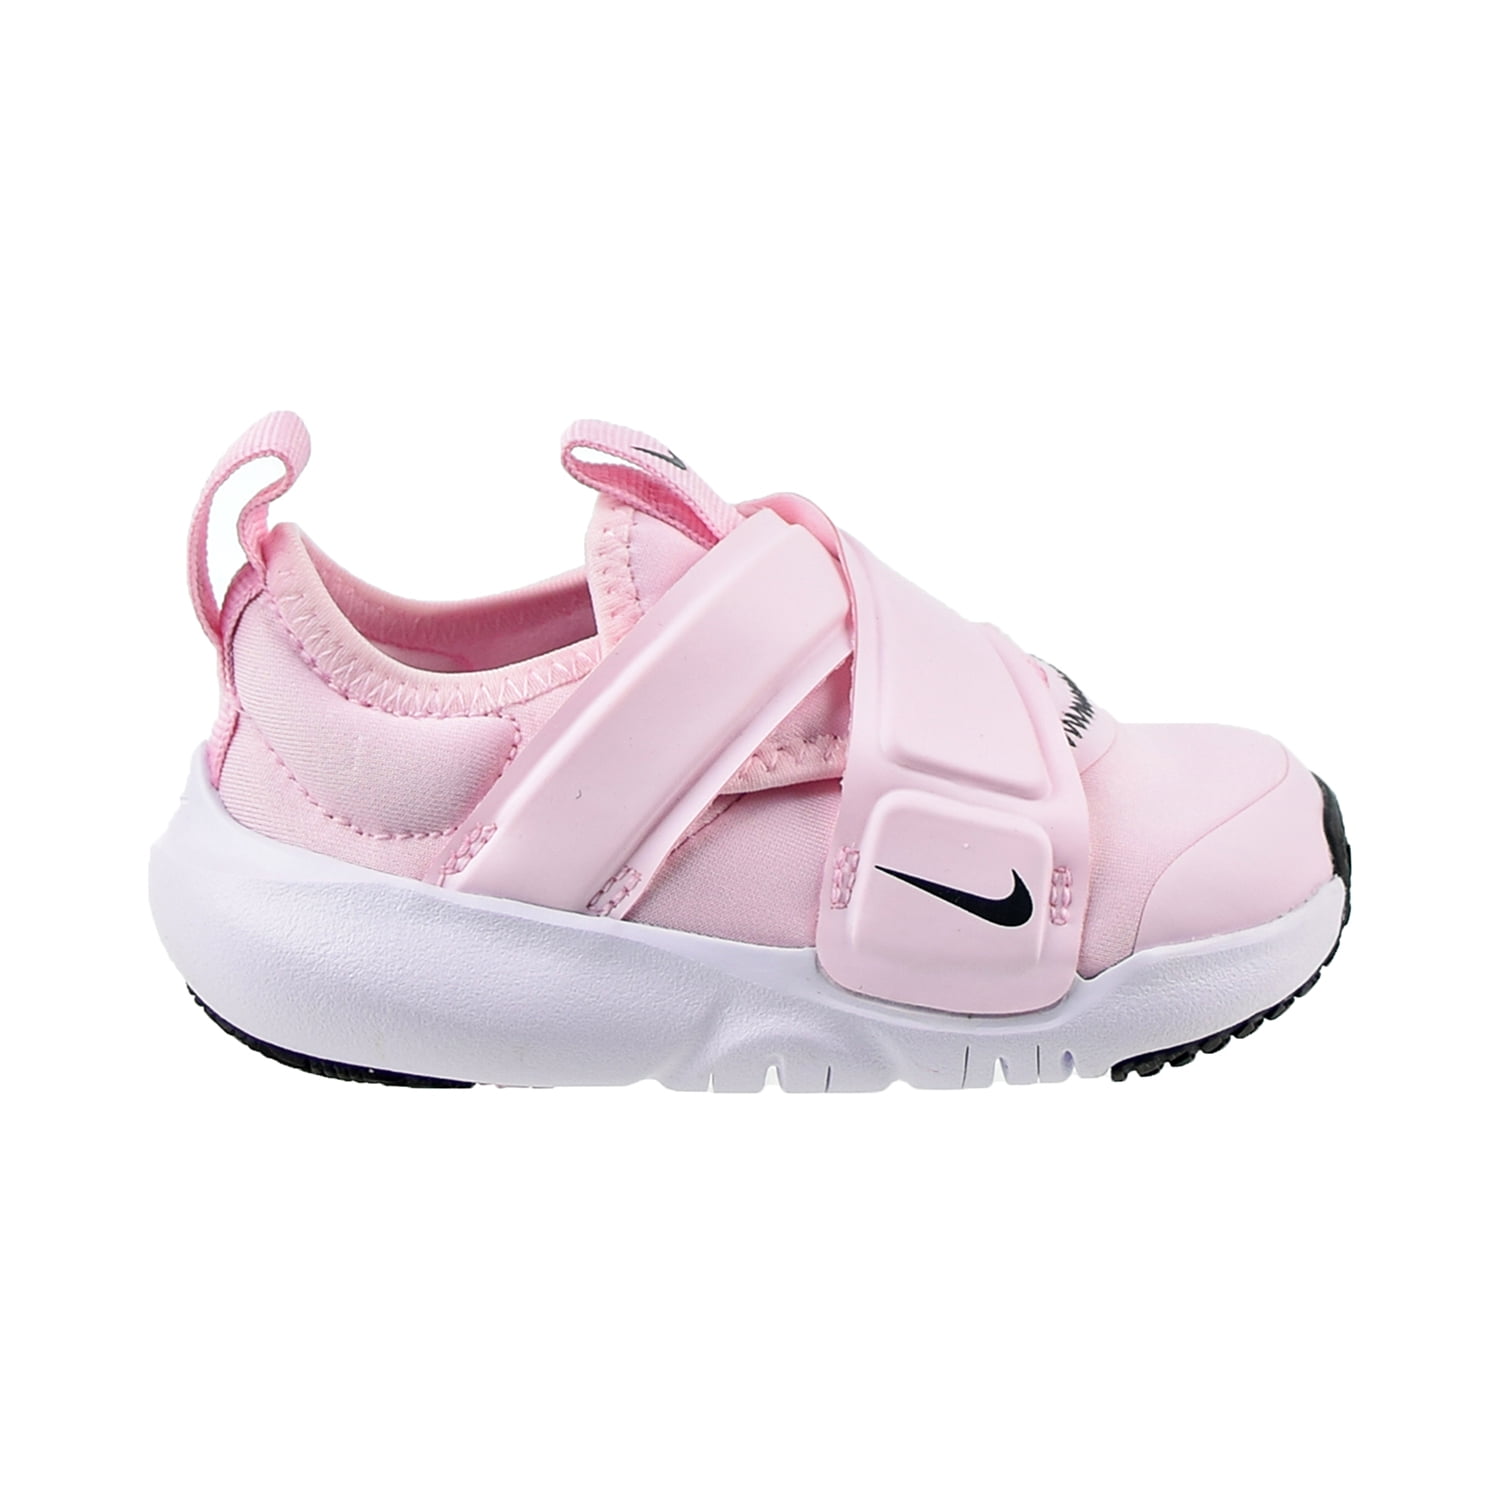 Nike Flex (TD) Toddlers' Shoes Foam-Fuchsia Glow-Grey cz0188-600 - Walmart.com